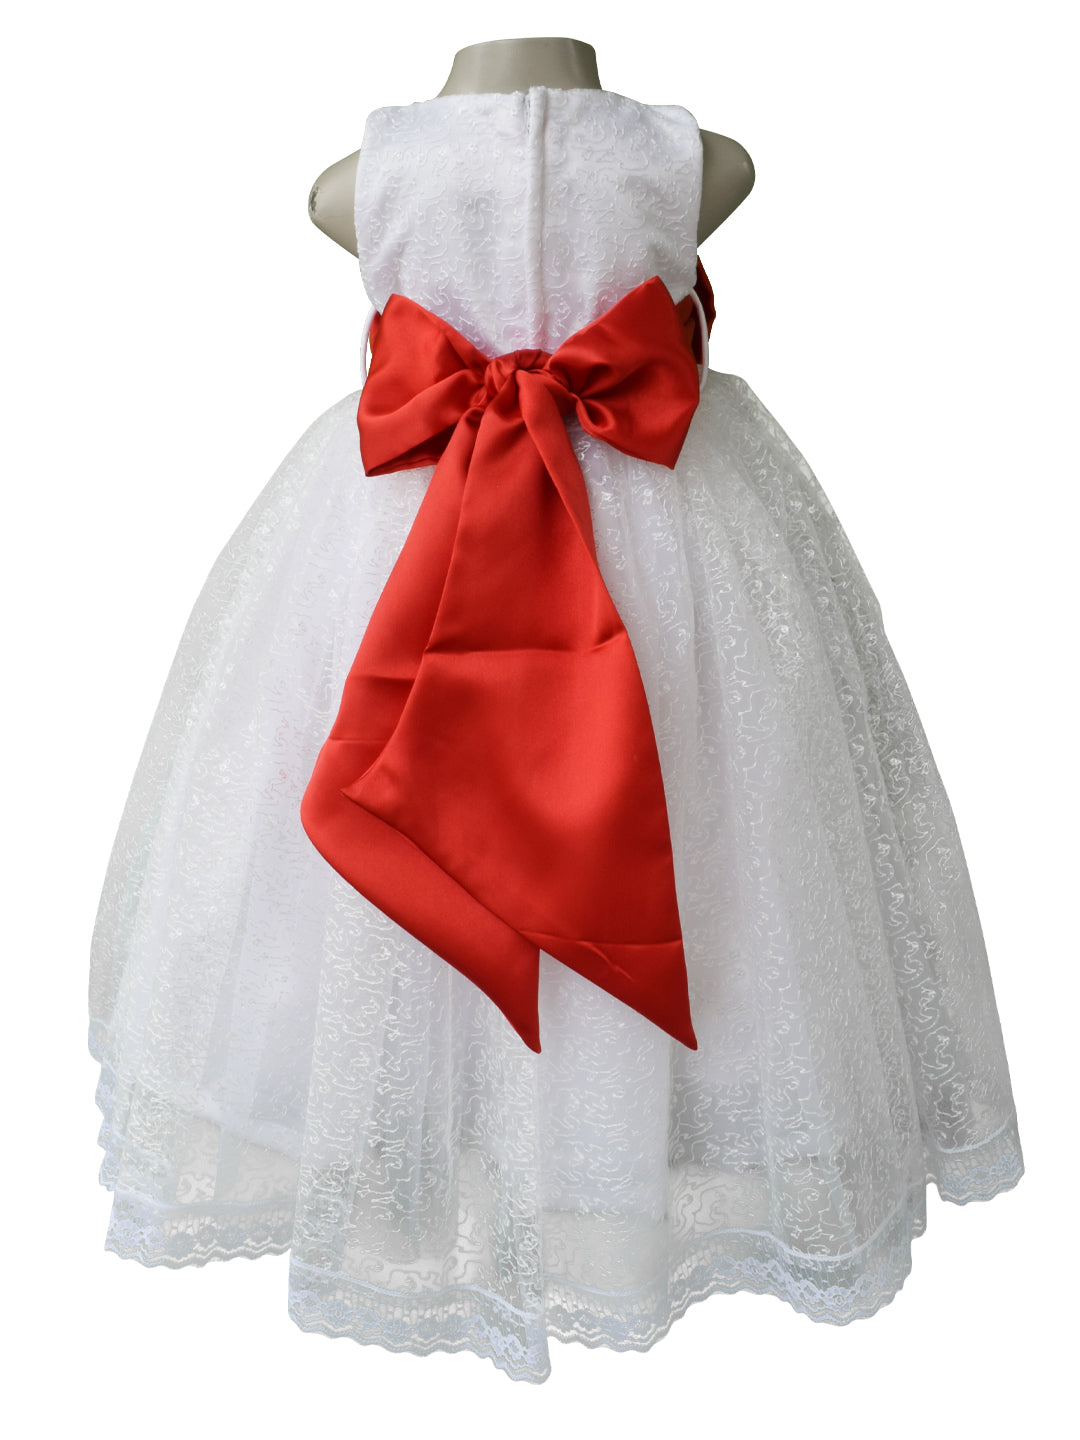 Princess Multi-layer Wedding Flower Girl Dress (28201317) - eDressit | Red  flower girl dresses, Girls dresses, Flower girl dresses tulle